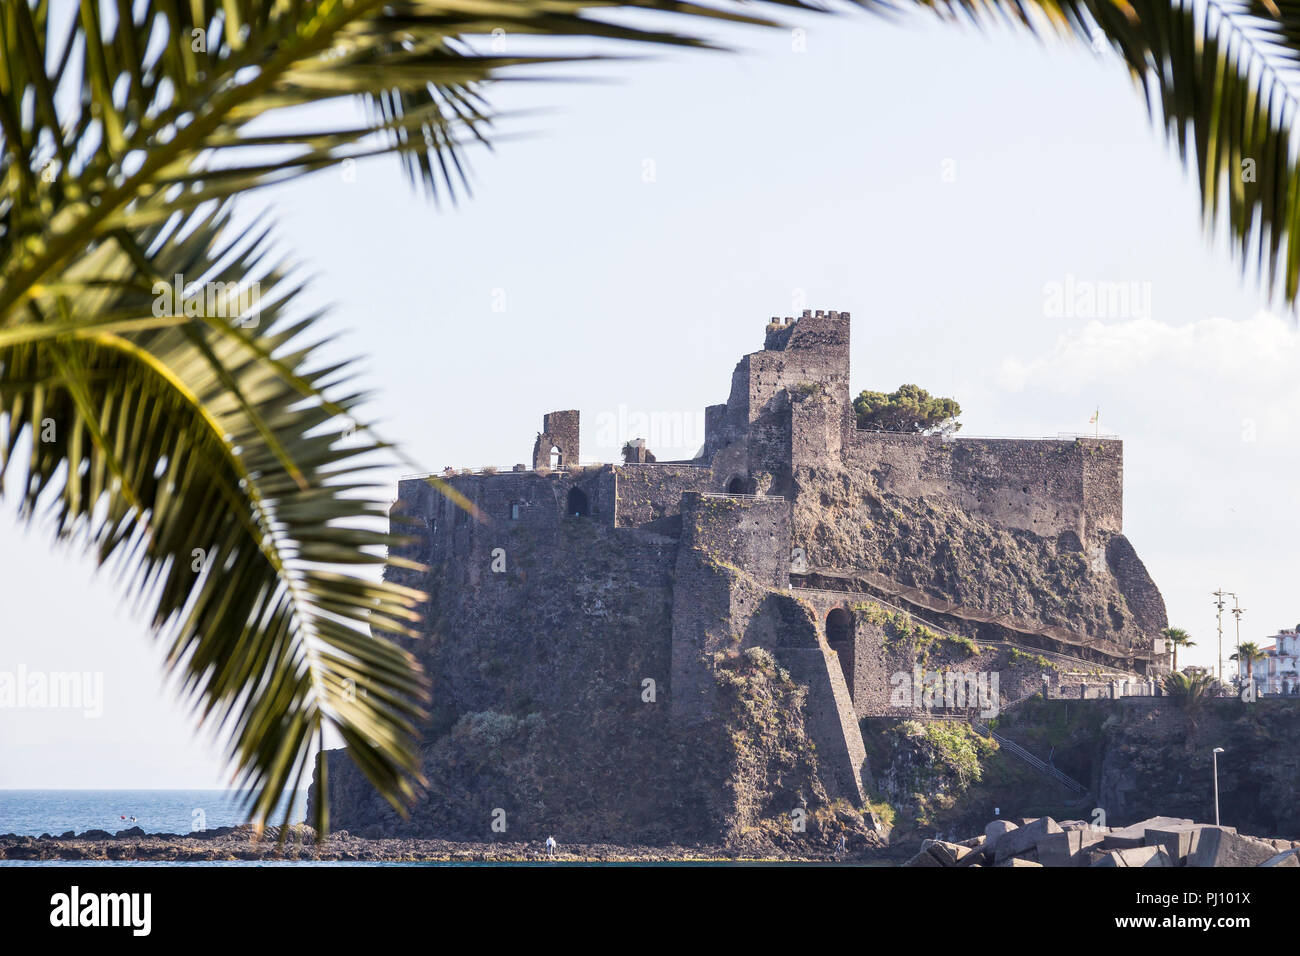 Rovine del medievale castello normanno di Aci Castello, Catania, Sicilia, Italia Foto Stock